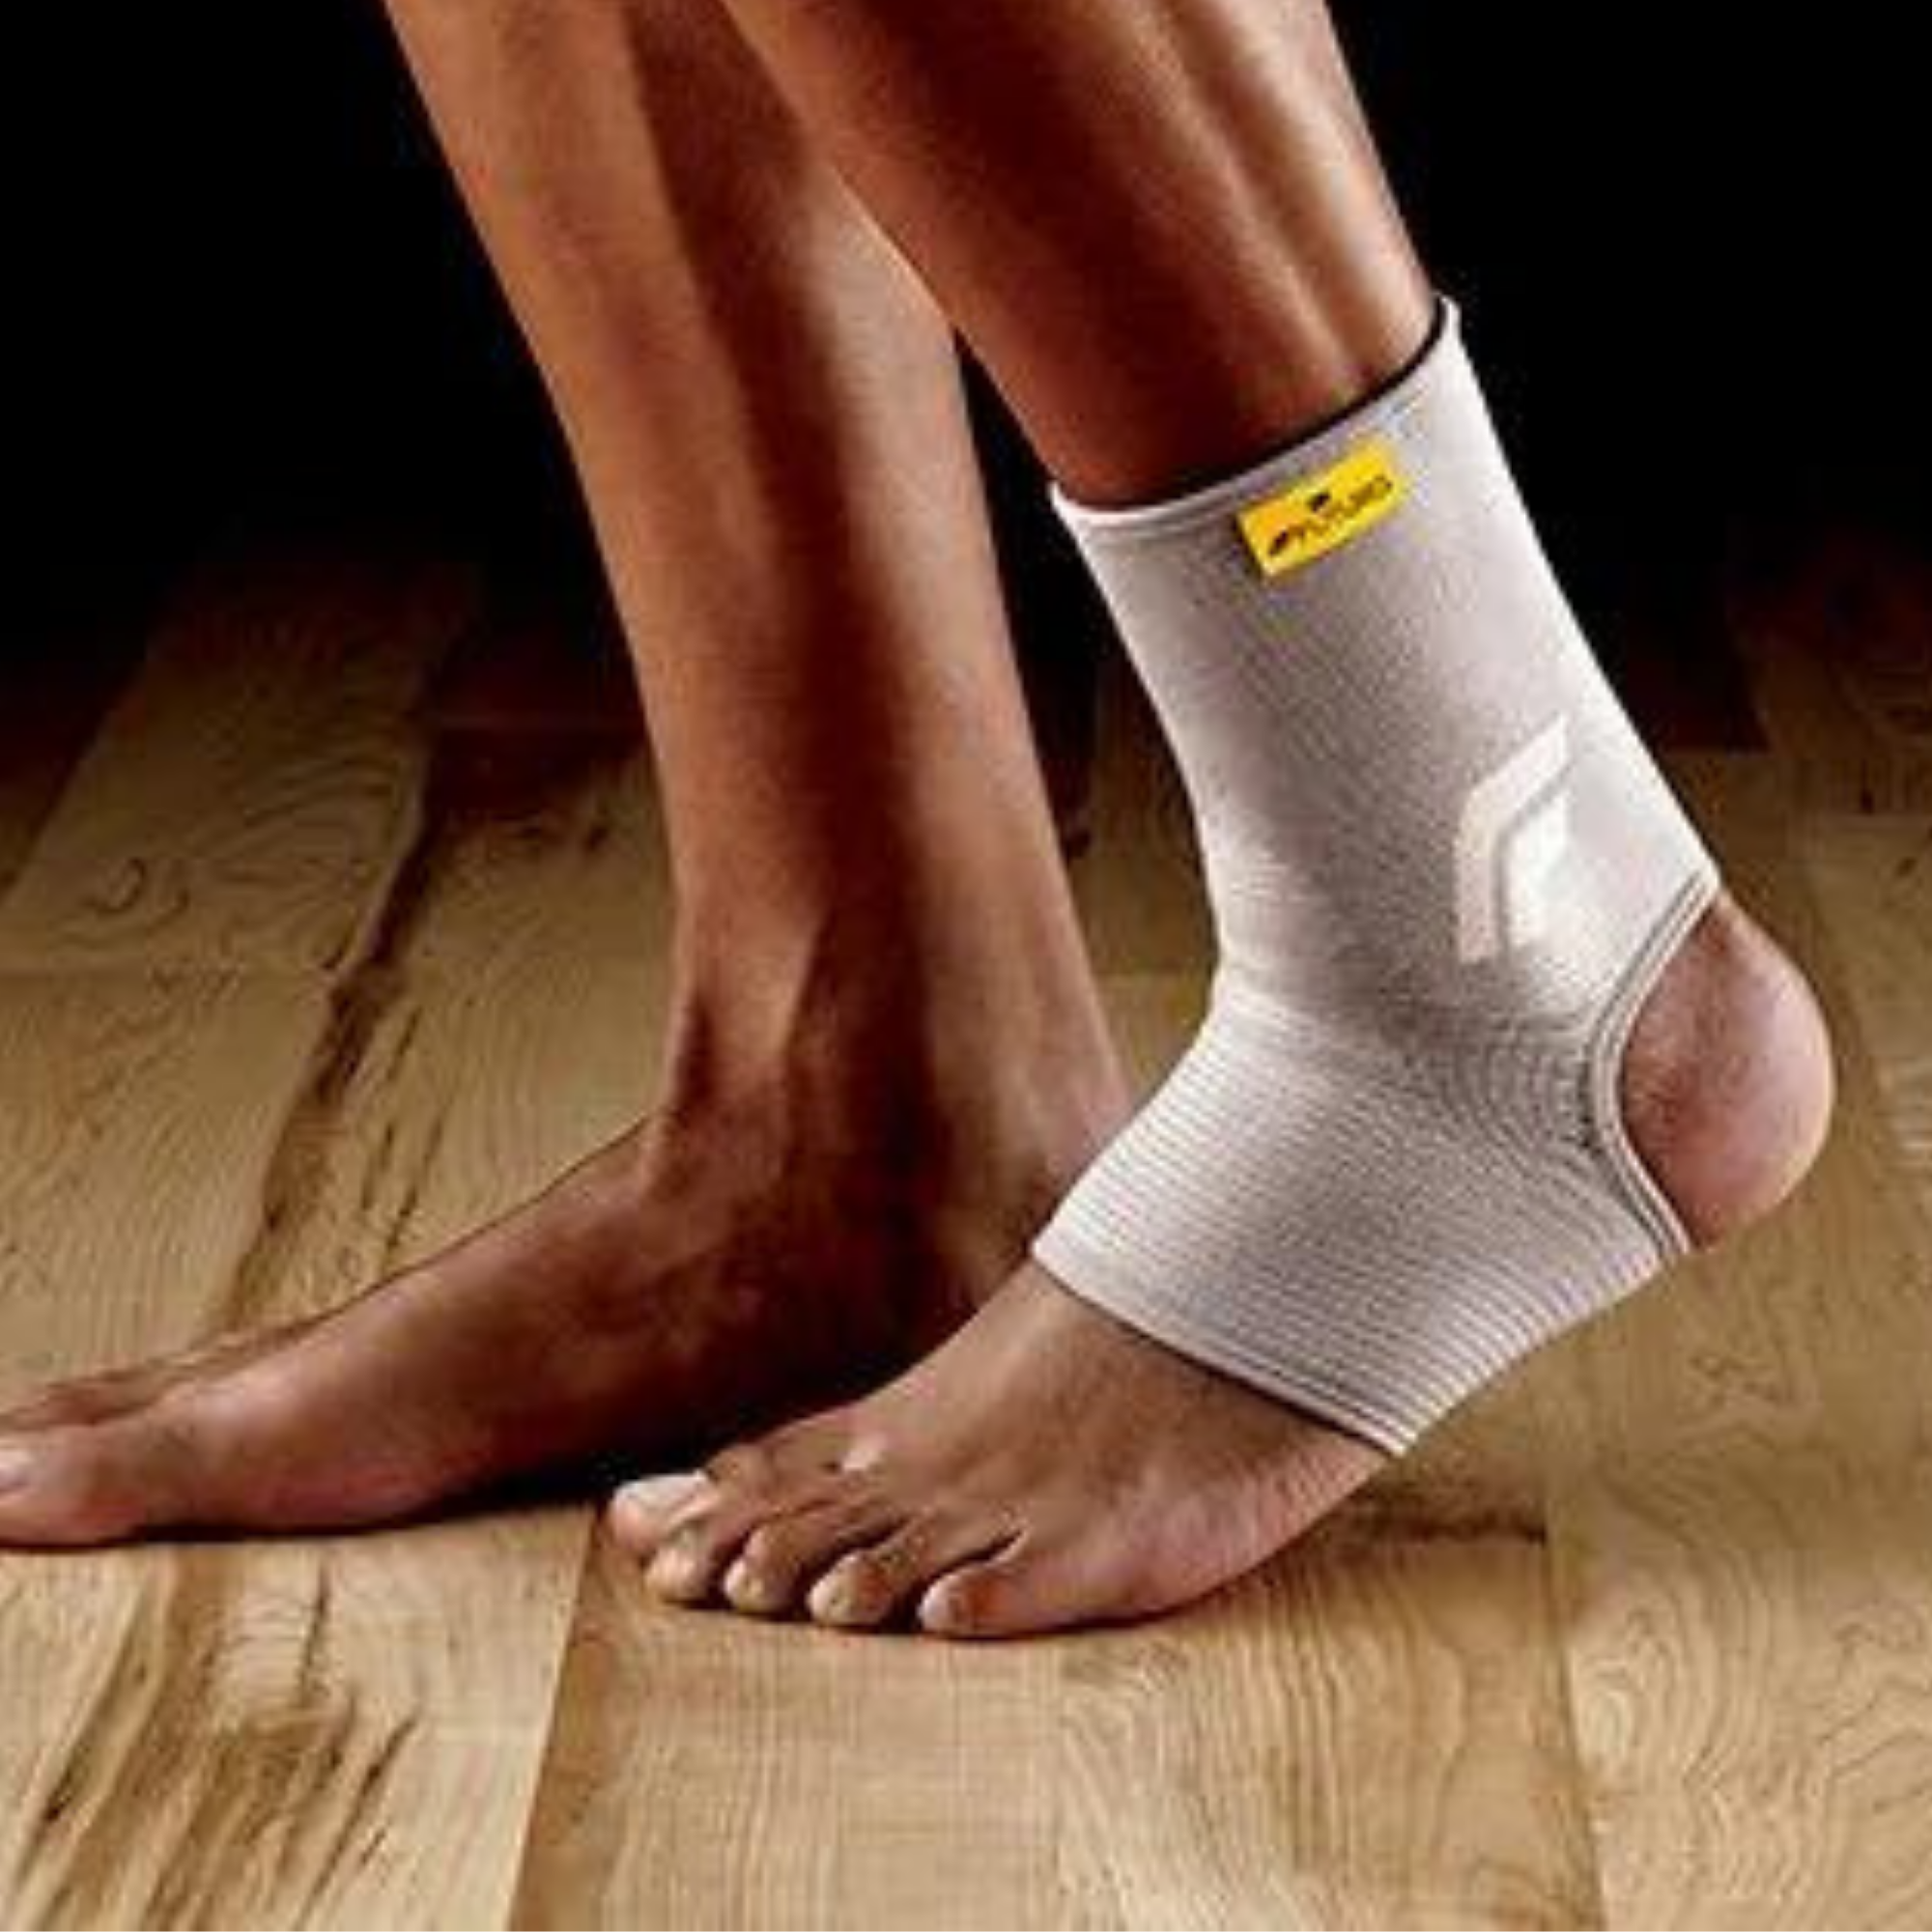 Futuro Comfort Ankle Support 76581ENR Medium